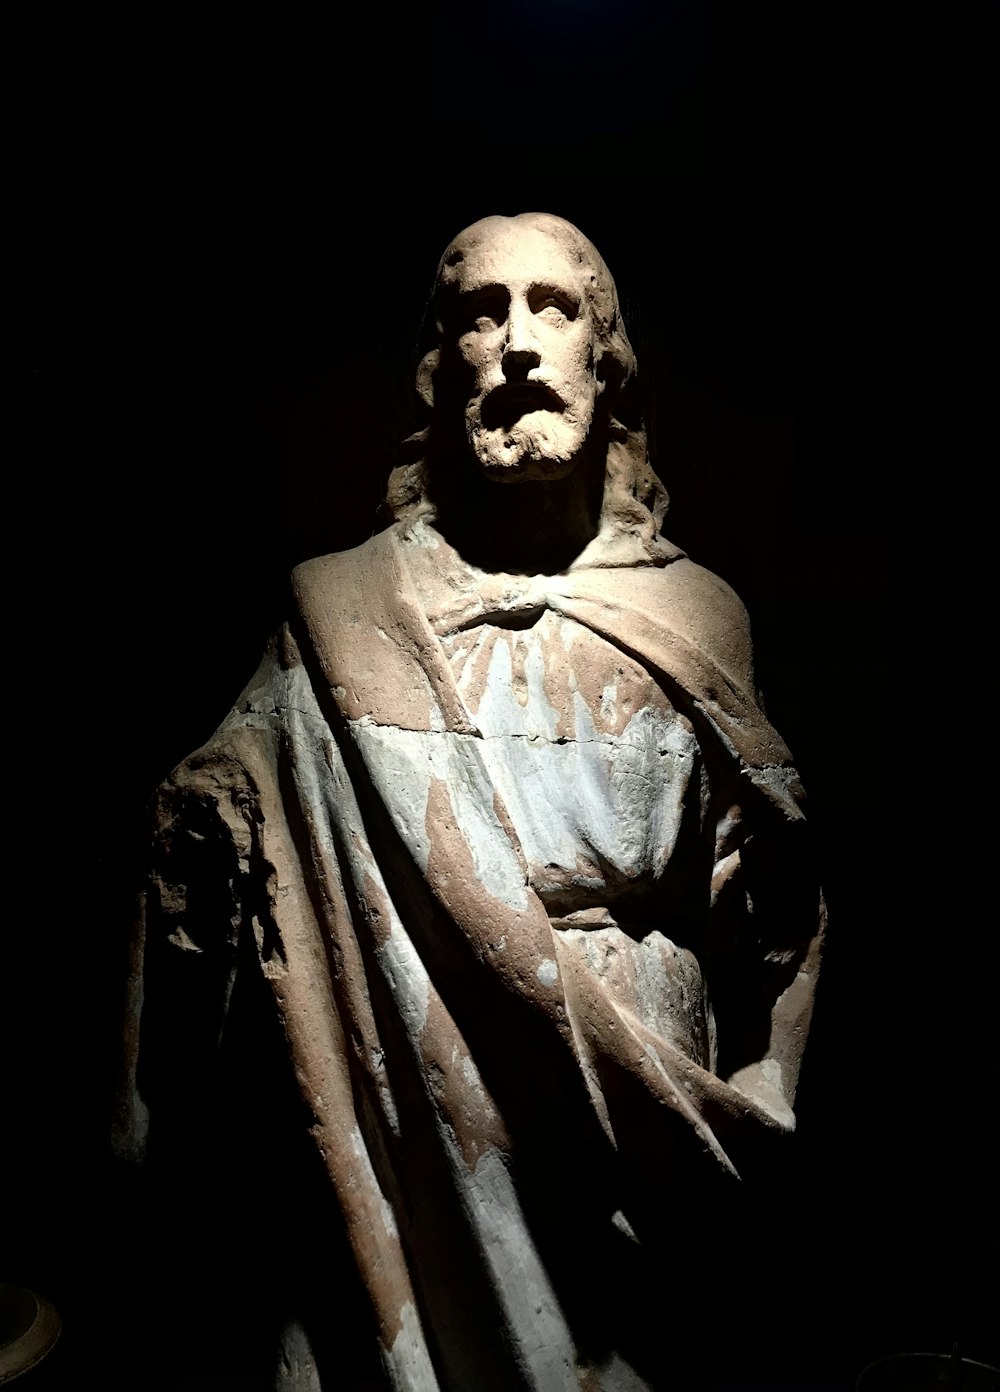 man in black coat statue